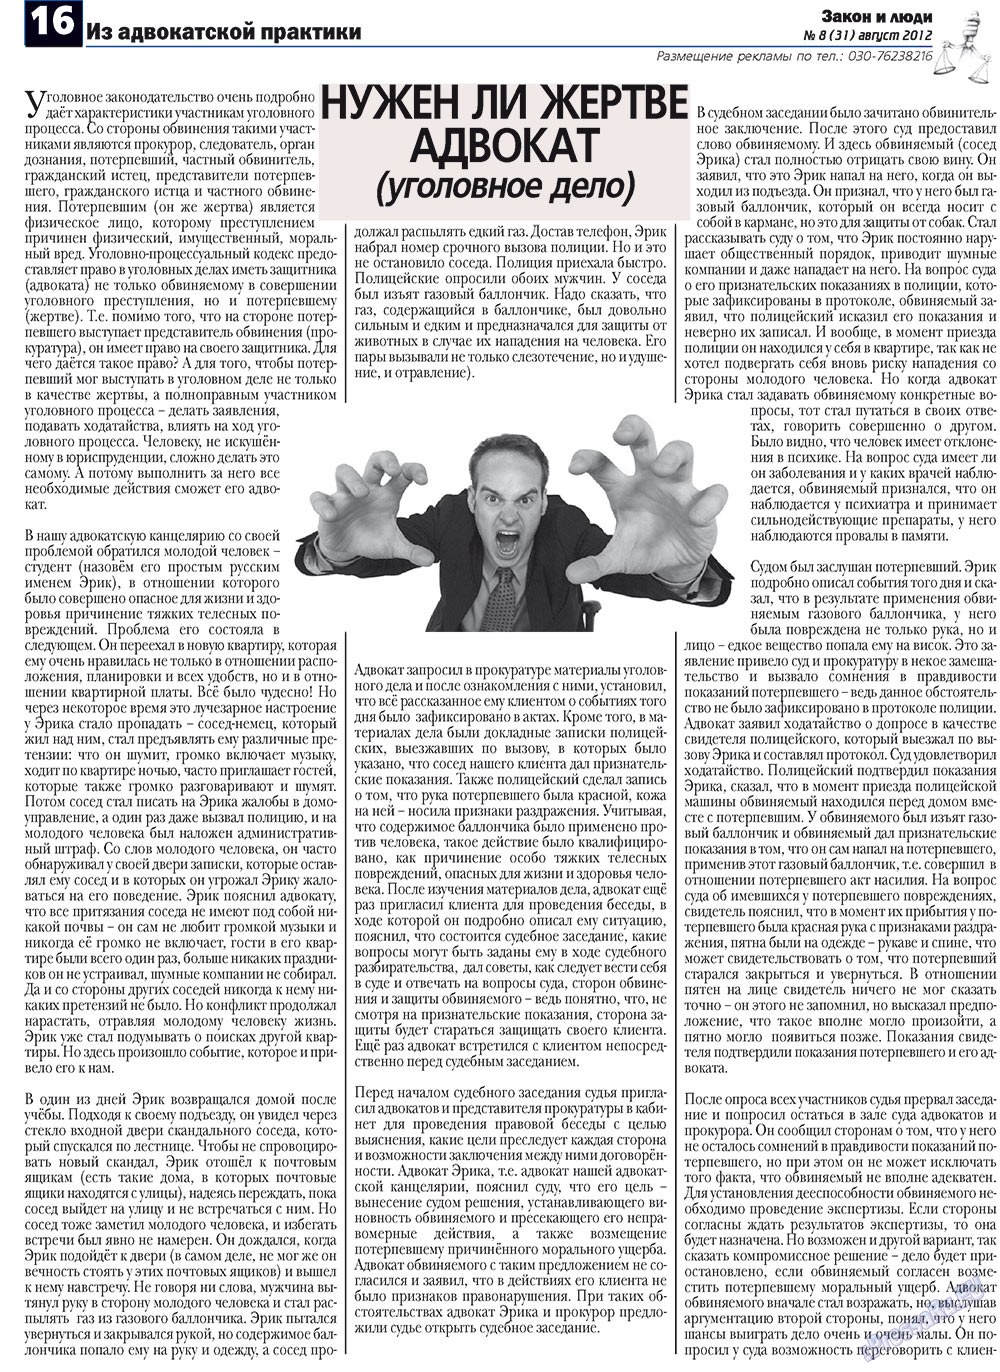 Закон и люди, газета. 2012 №8 стр.16